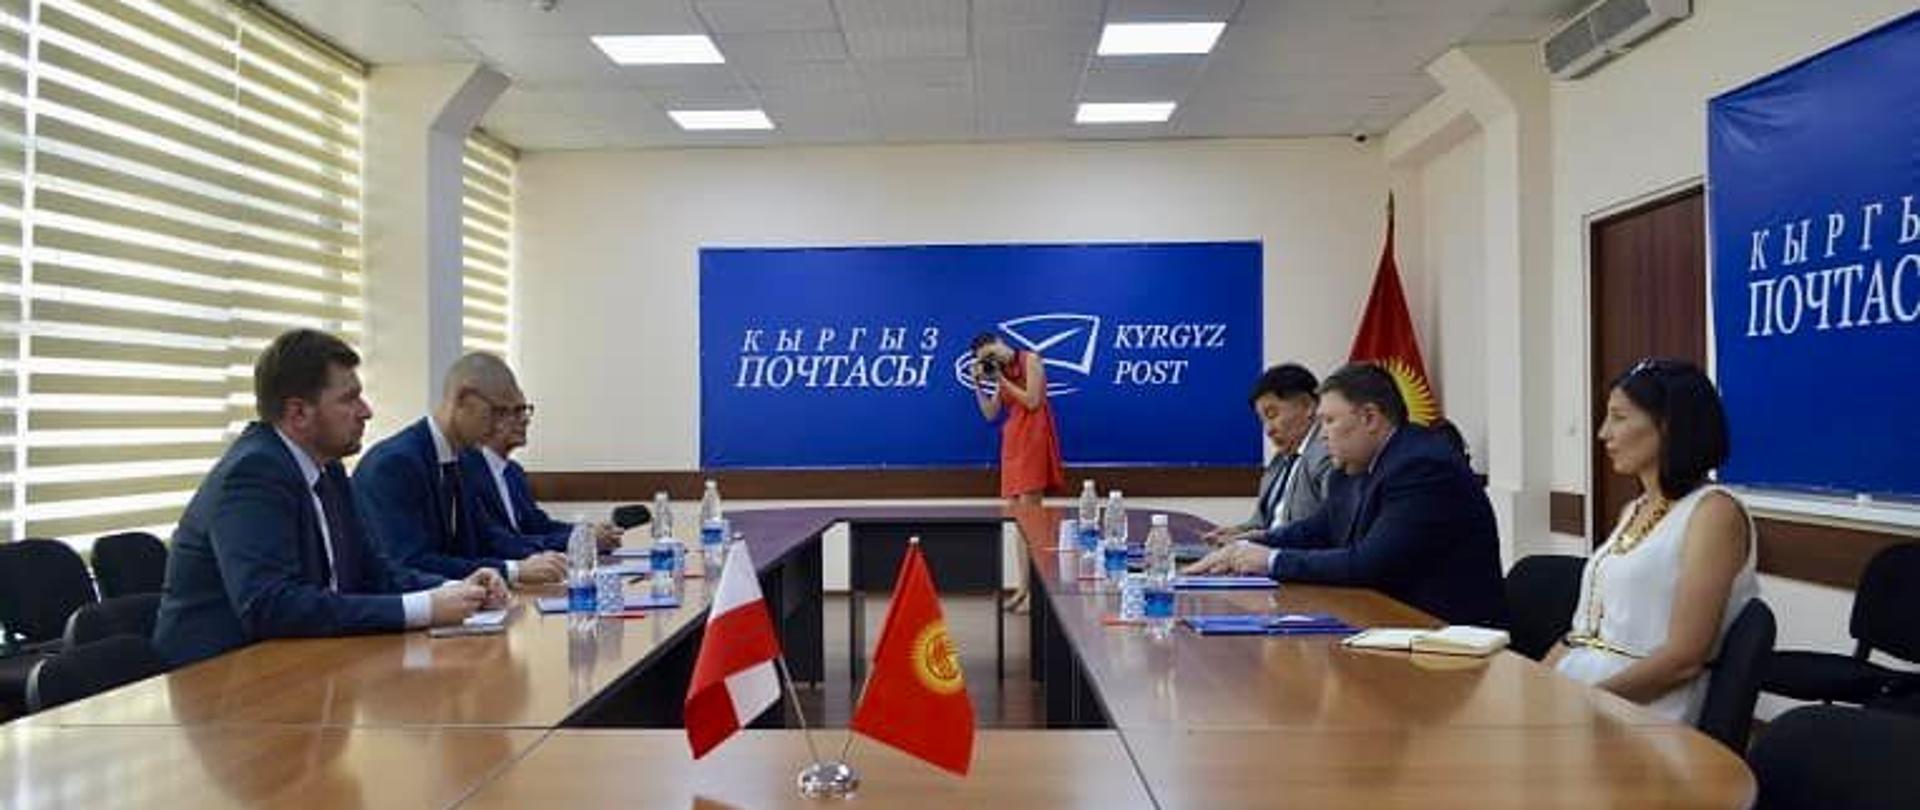 Spotkanie z Dyrektorem Generalnym Poczty Kirgiskiej w Biszkeku 22.07